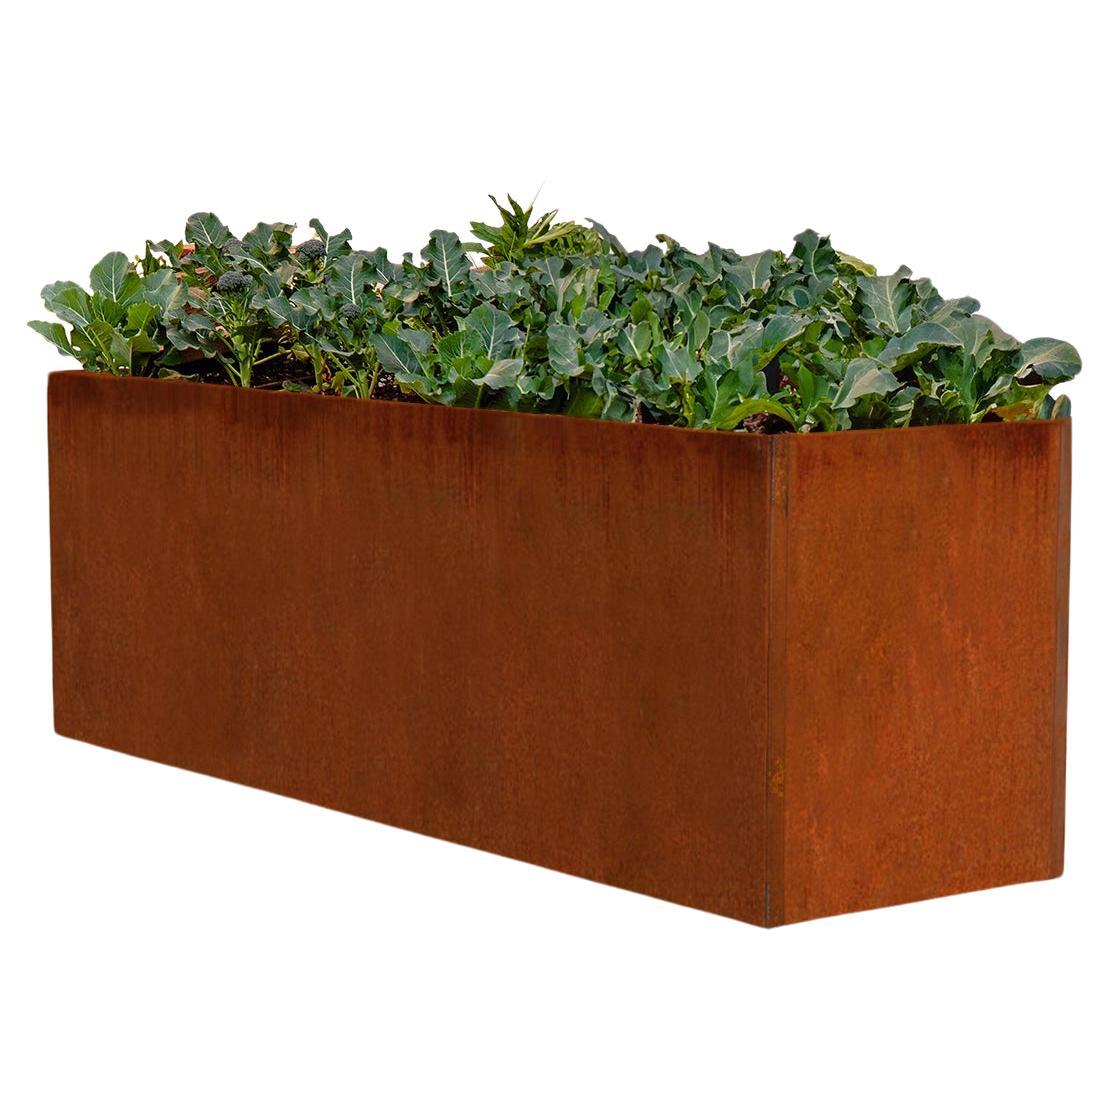 Corten Steel Planter or Edible Garden Box (5' X 2' X 2.5') For Sale